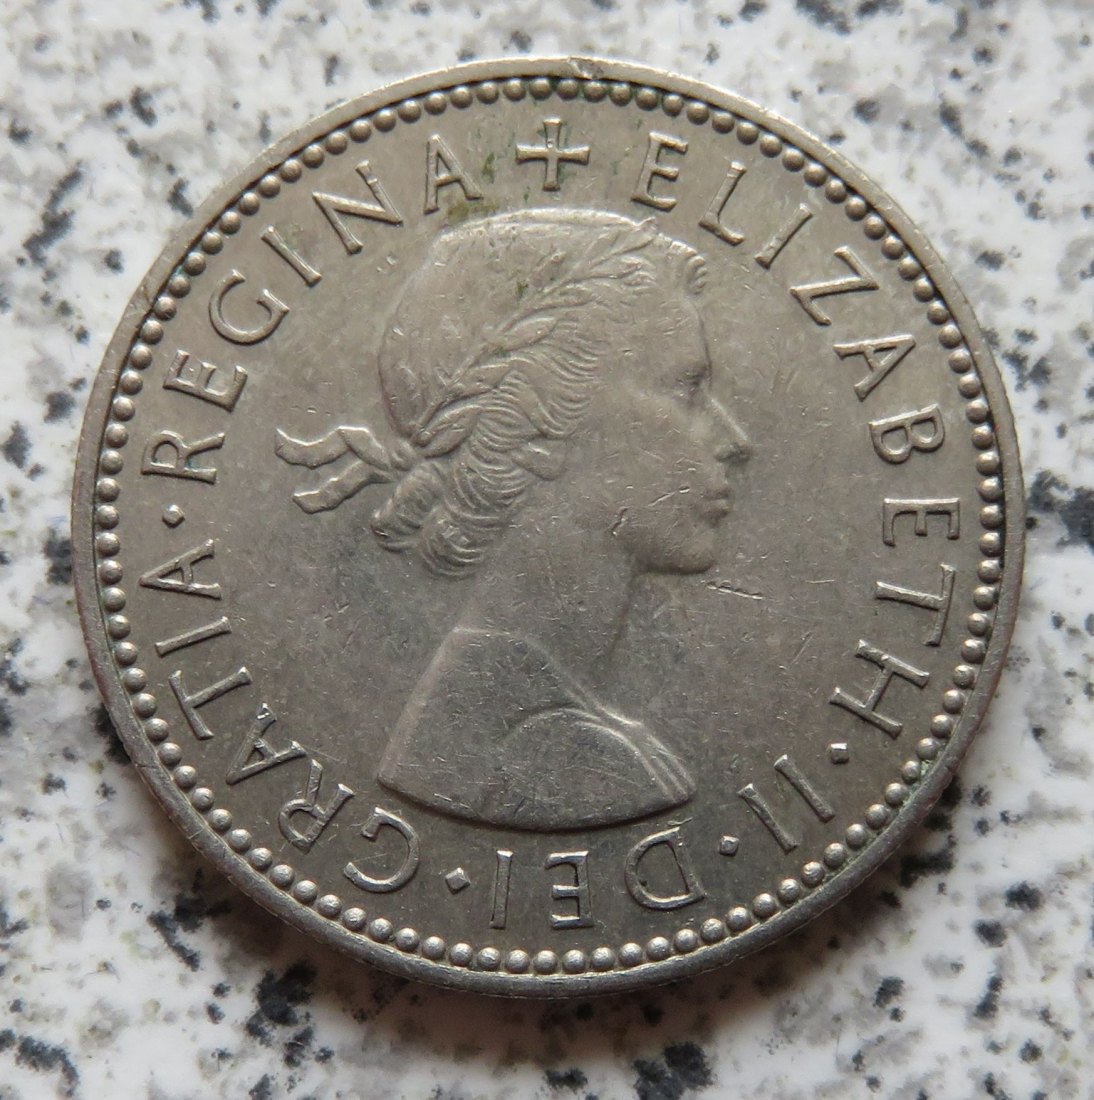  Großbritannien 1 Shilling 1958, Englisch (3)   